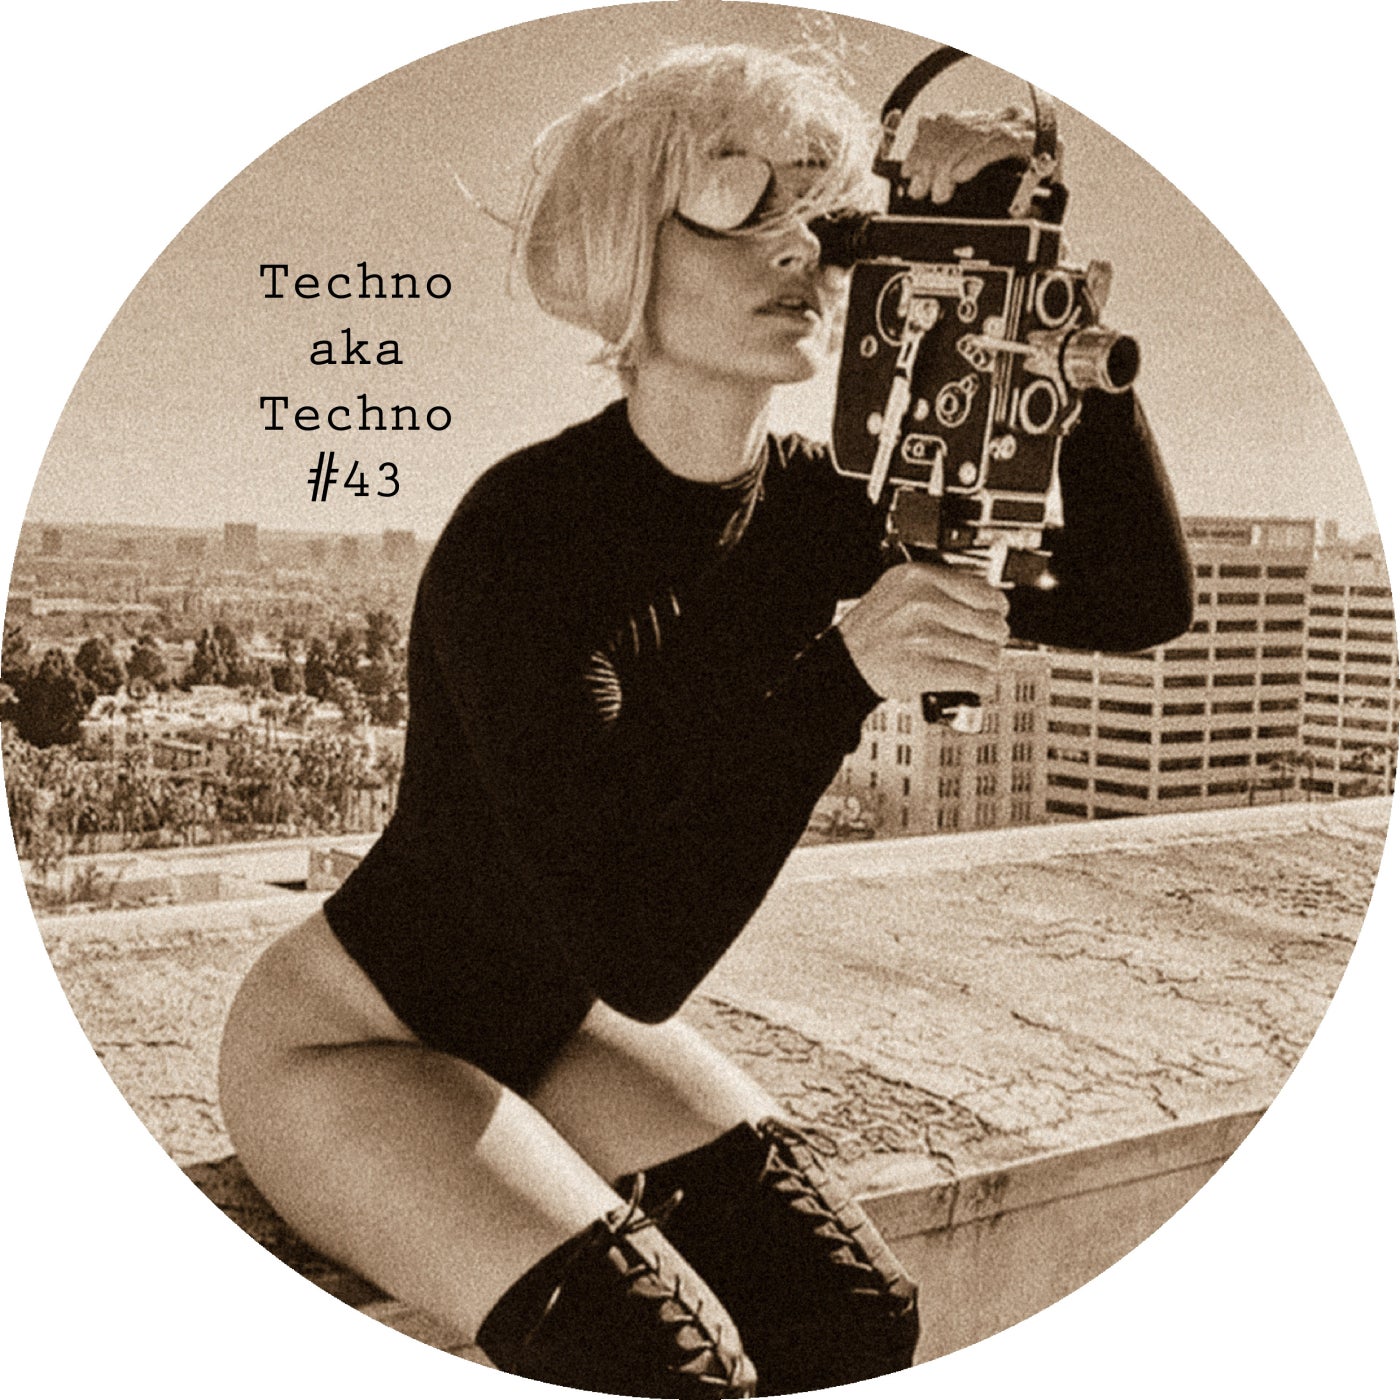 Techno Aka Techno #43